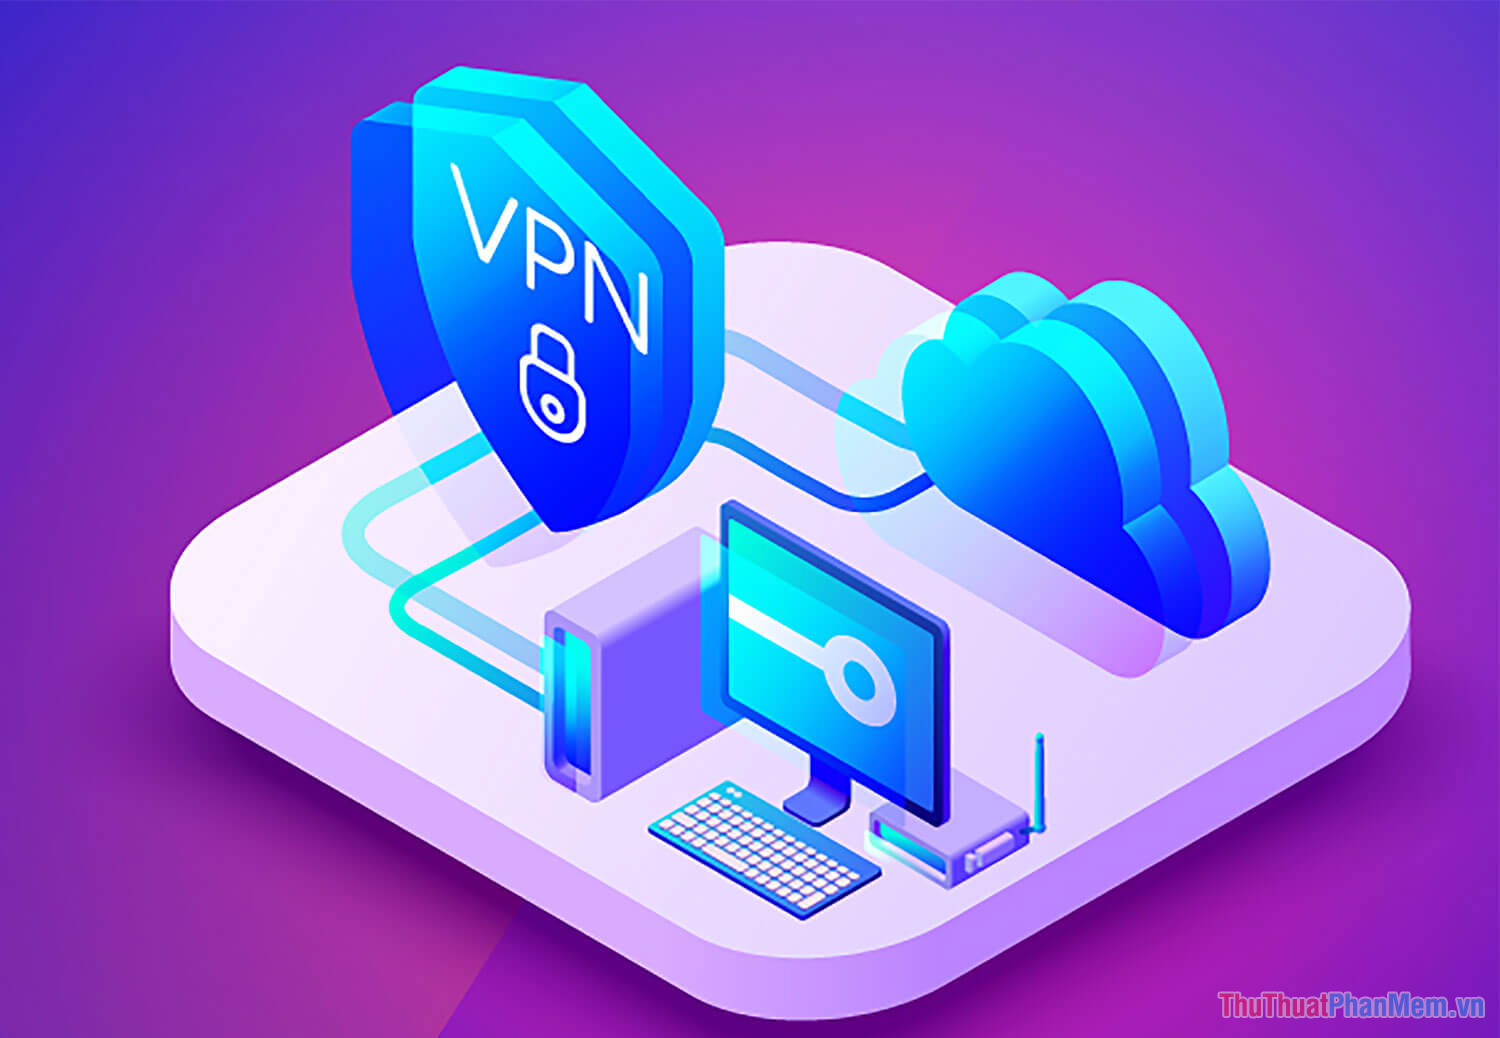 VPN (Virtual Private Network - mạng riêng ảo)